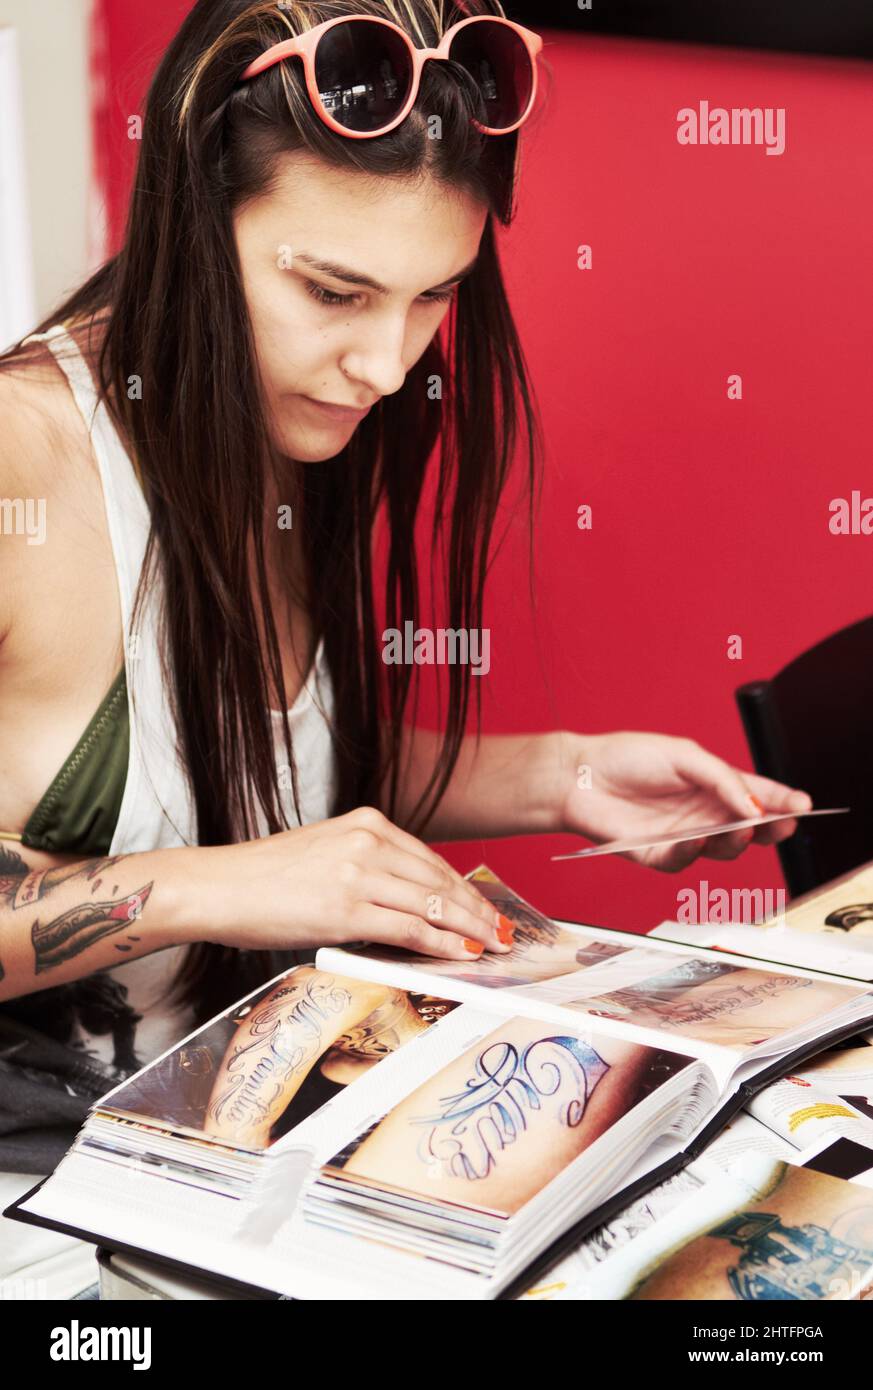 Trouver le modèle à ajouter à sa collection. Photo d'une belle jeune femme tatouée qui patchait à travers un album de dessins de tatouage. Banque D'Images